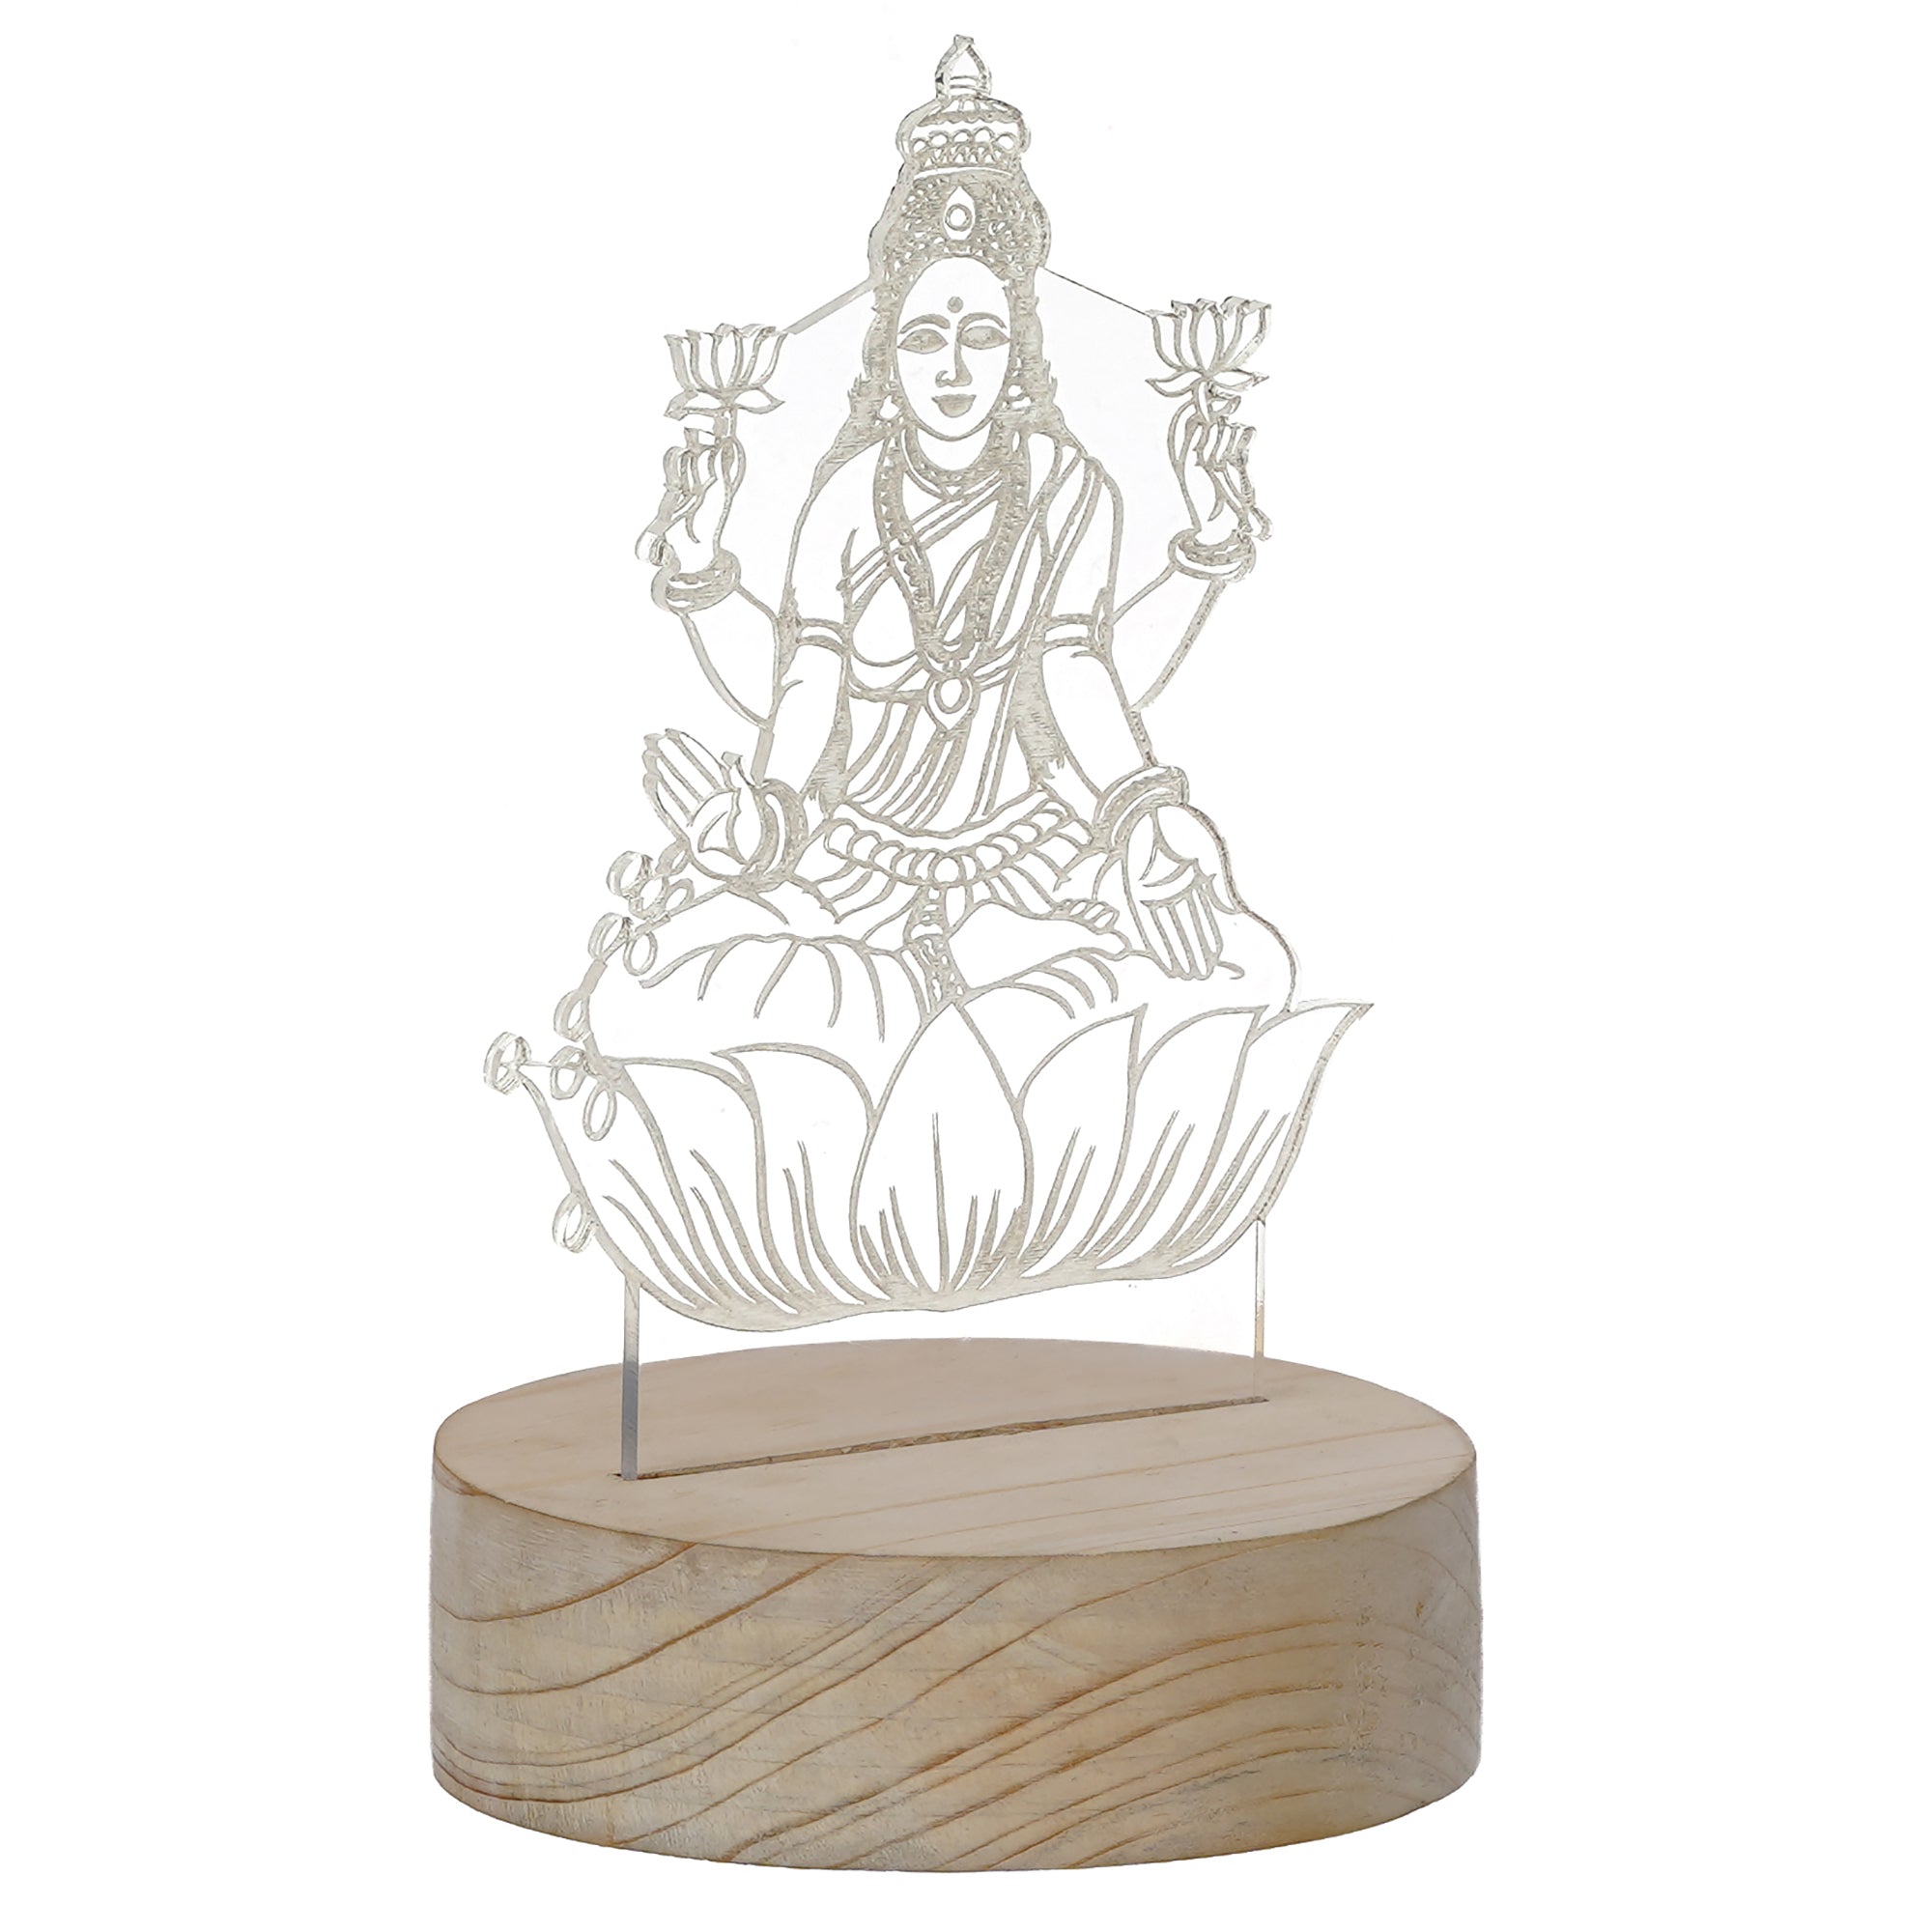 Goddess Laxmi Design Carved on Acrylic & Wood Base Night Lamp 4